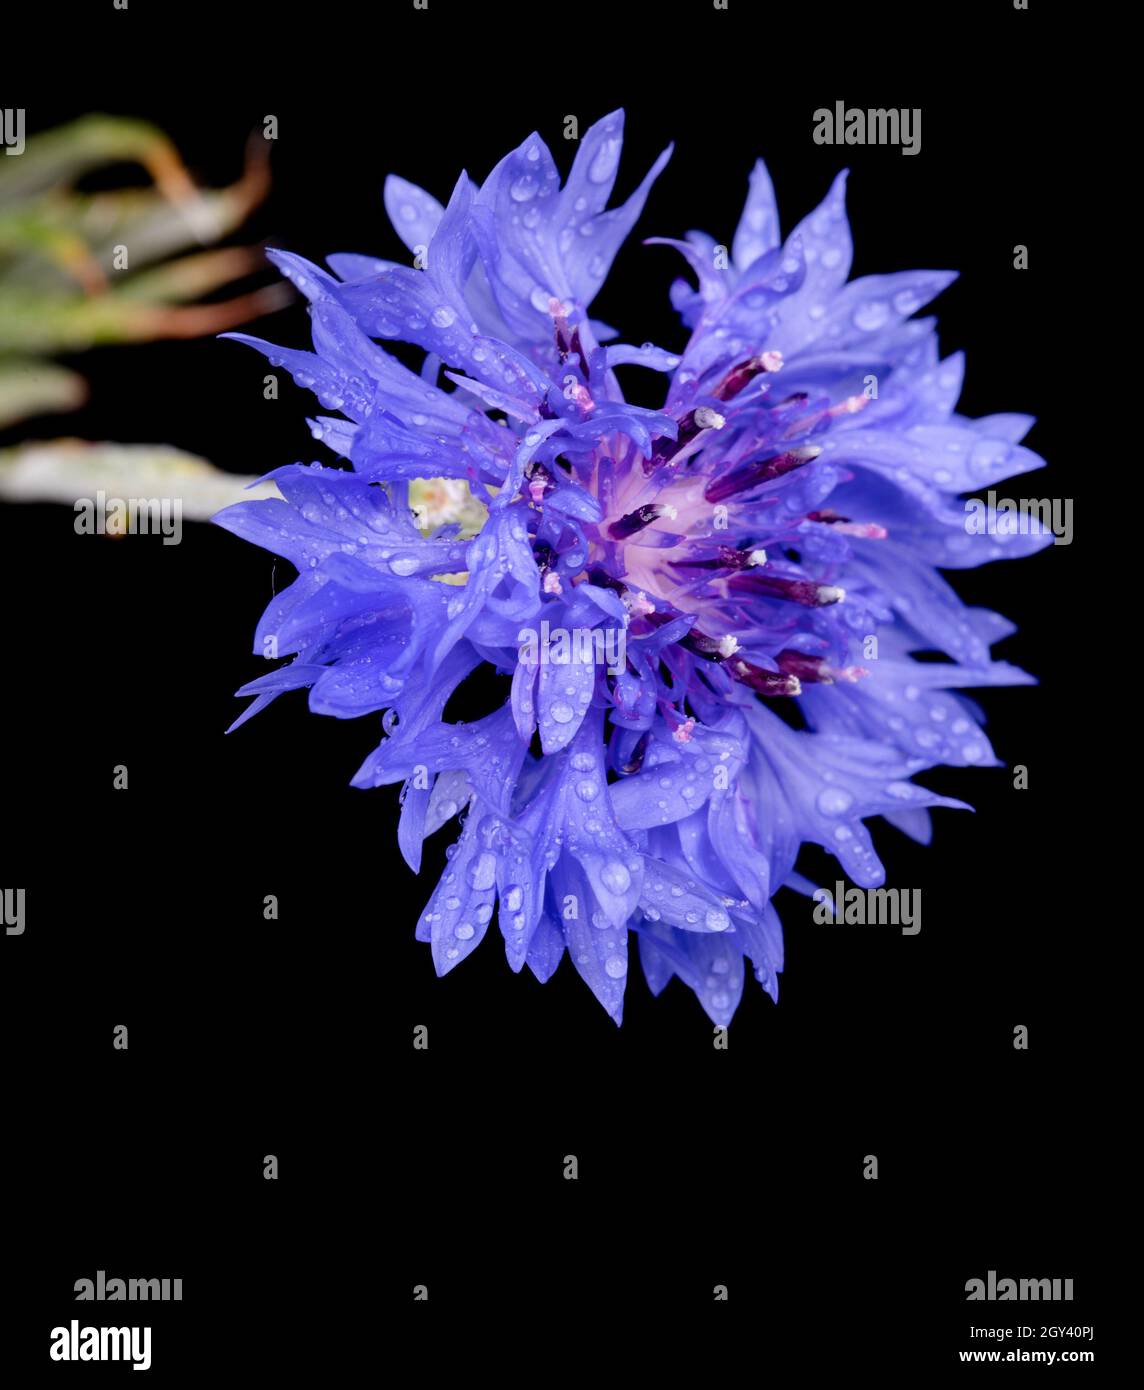 Centaurea cyanus, allgemein bekannt als Kornblume oder Junggesellenblatte, ist eine jährlich blühende Pflanze in der Familie der in Europa heimischen Asteraceae. In der pa Stockfoto